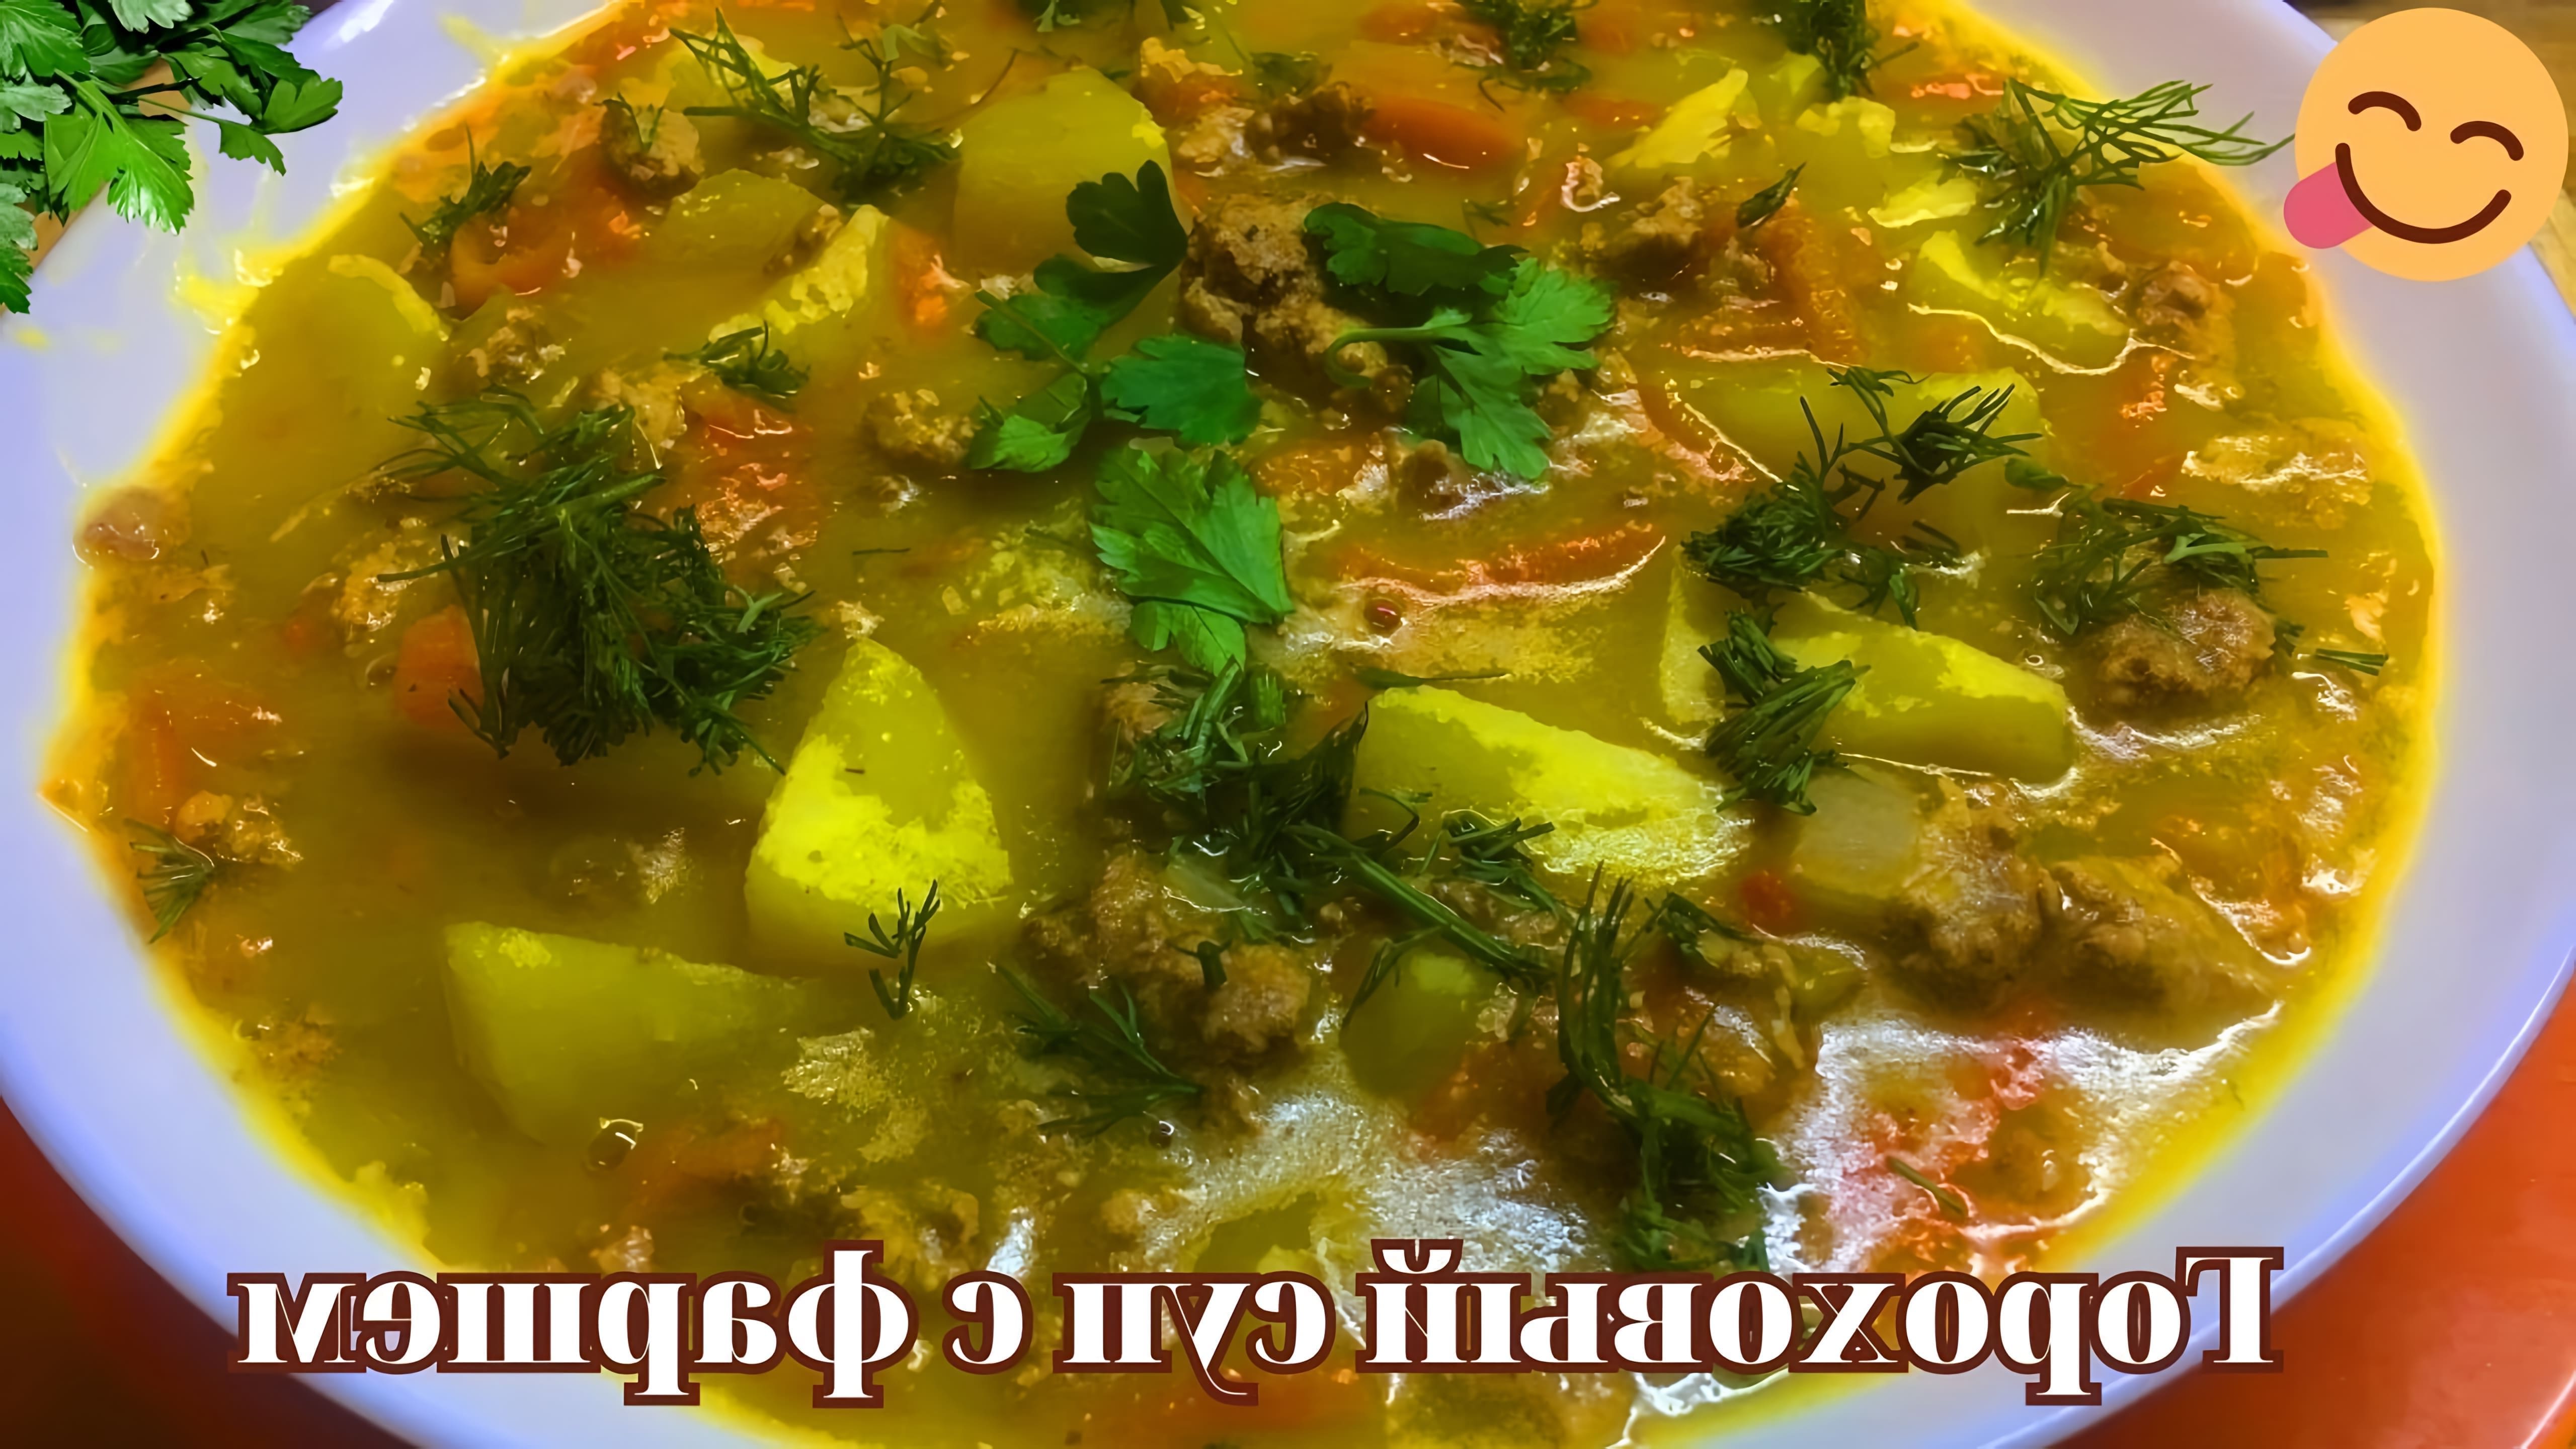 Очень вкусный гороховый суп с фаршем - это видео-ролик, который демонстрирует процесс приготовления ароматного и сытного блюда